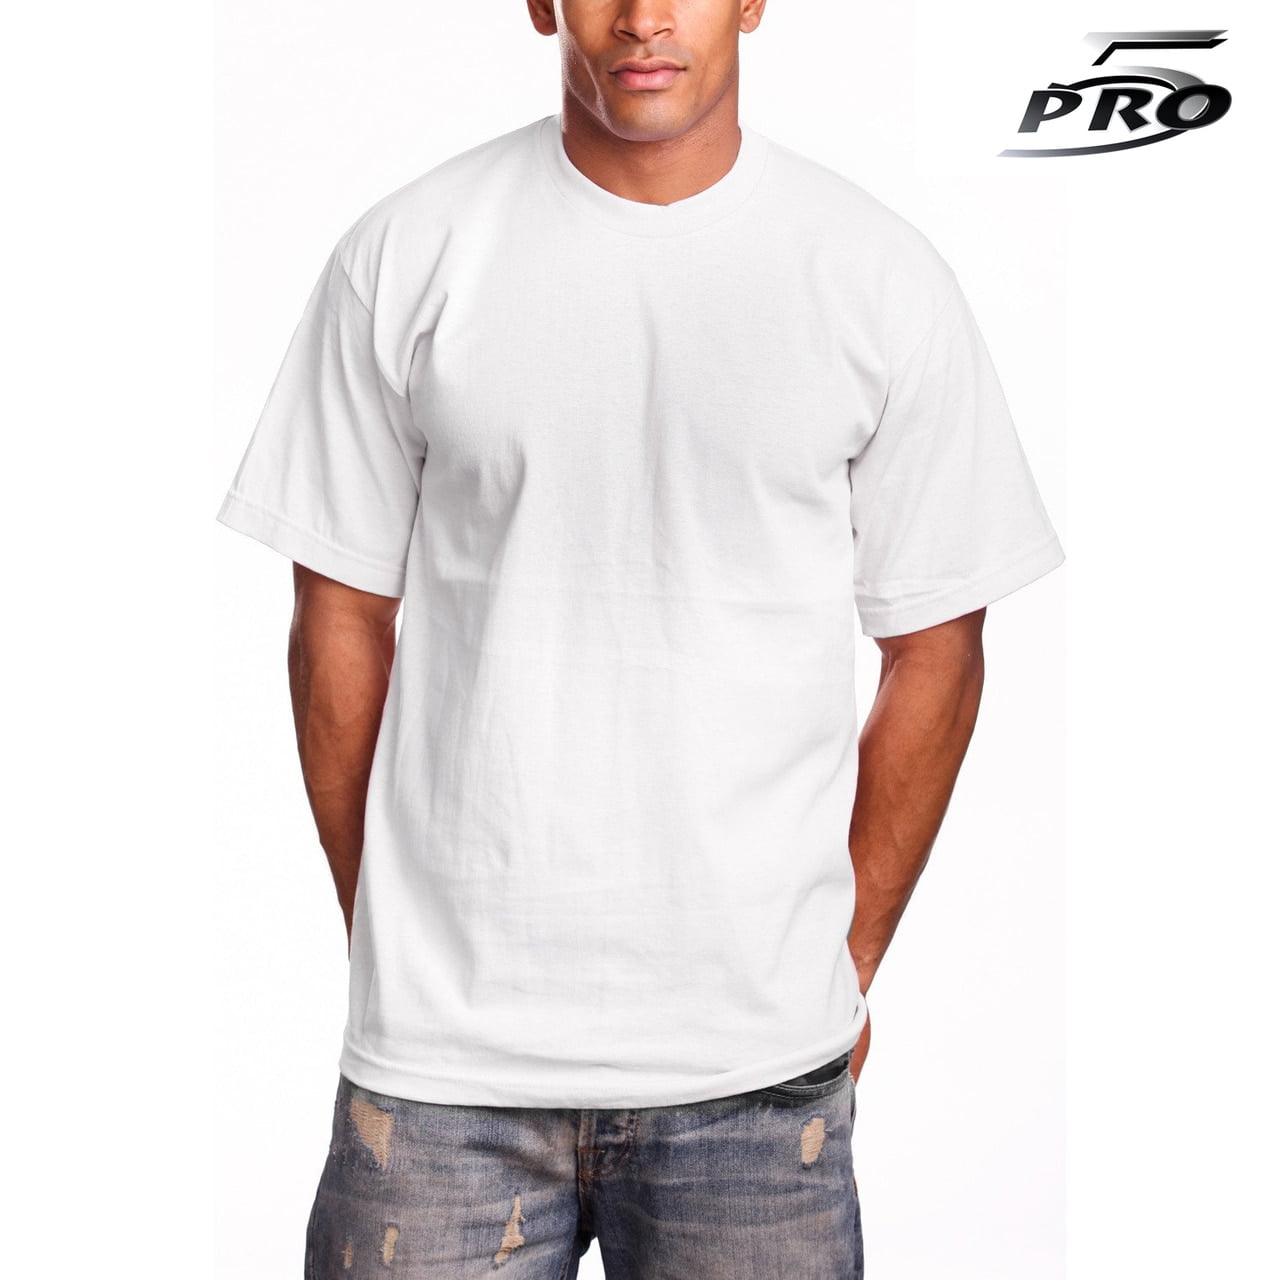 Pro 5 - Pro 5 Apparel 100% Cotton Super Heavy T-Shirt White 3Pack